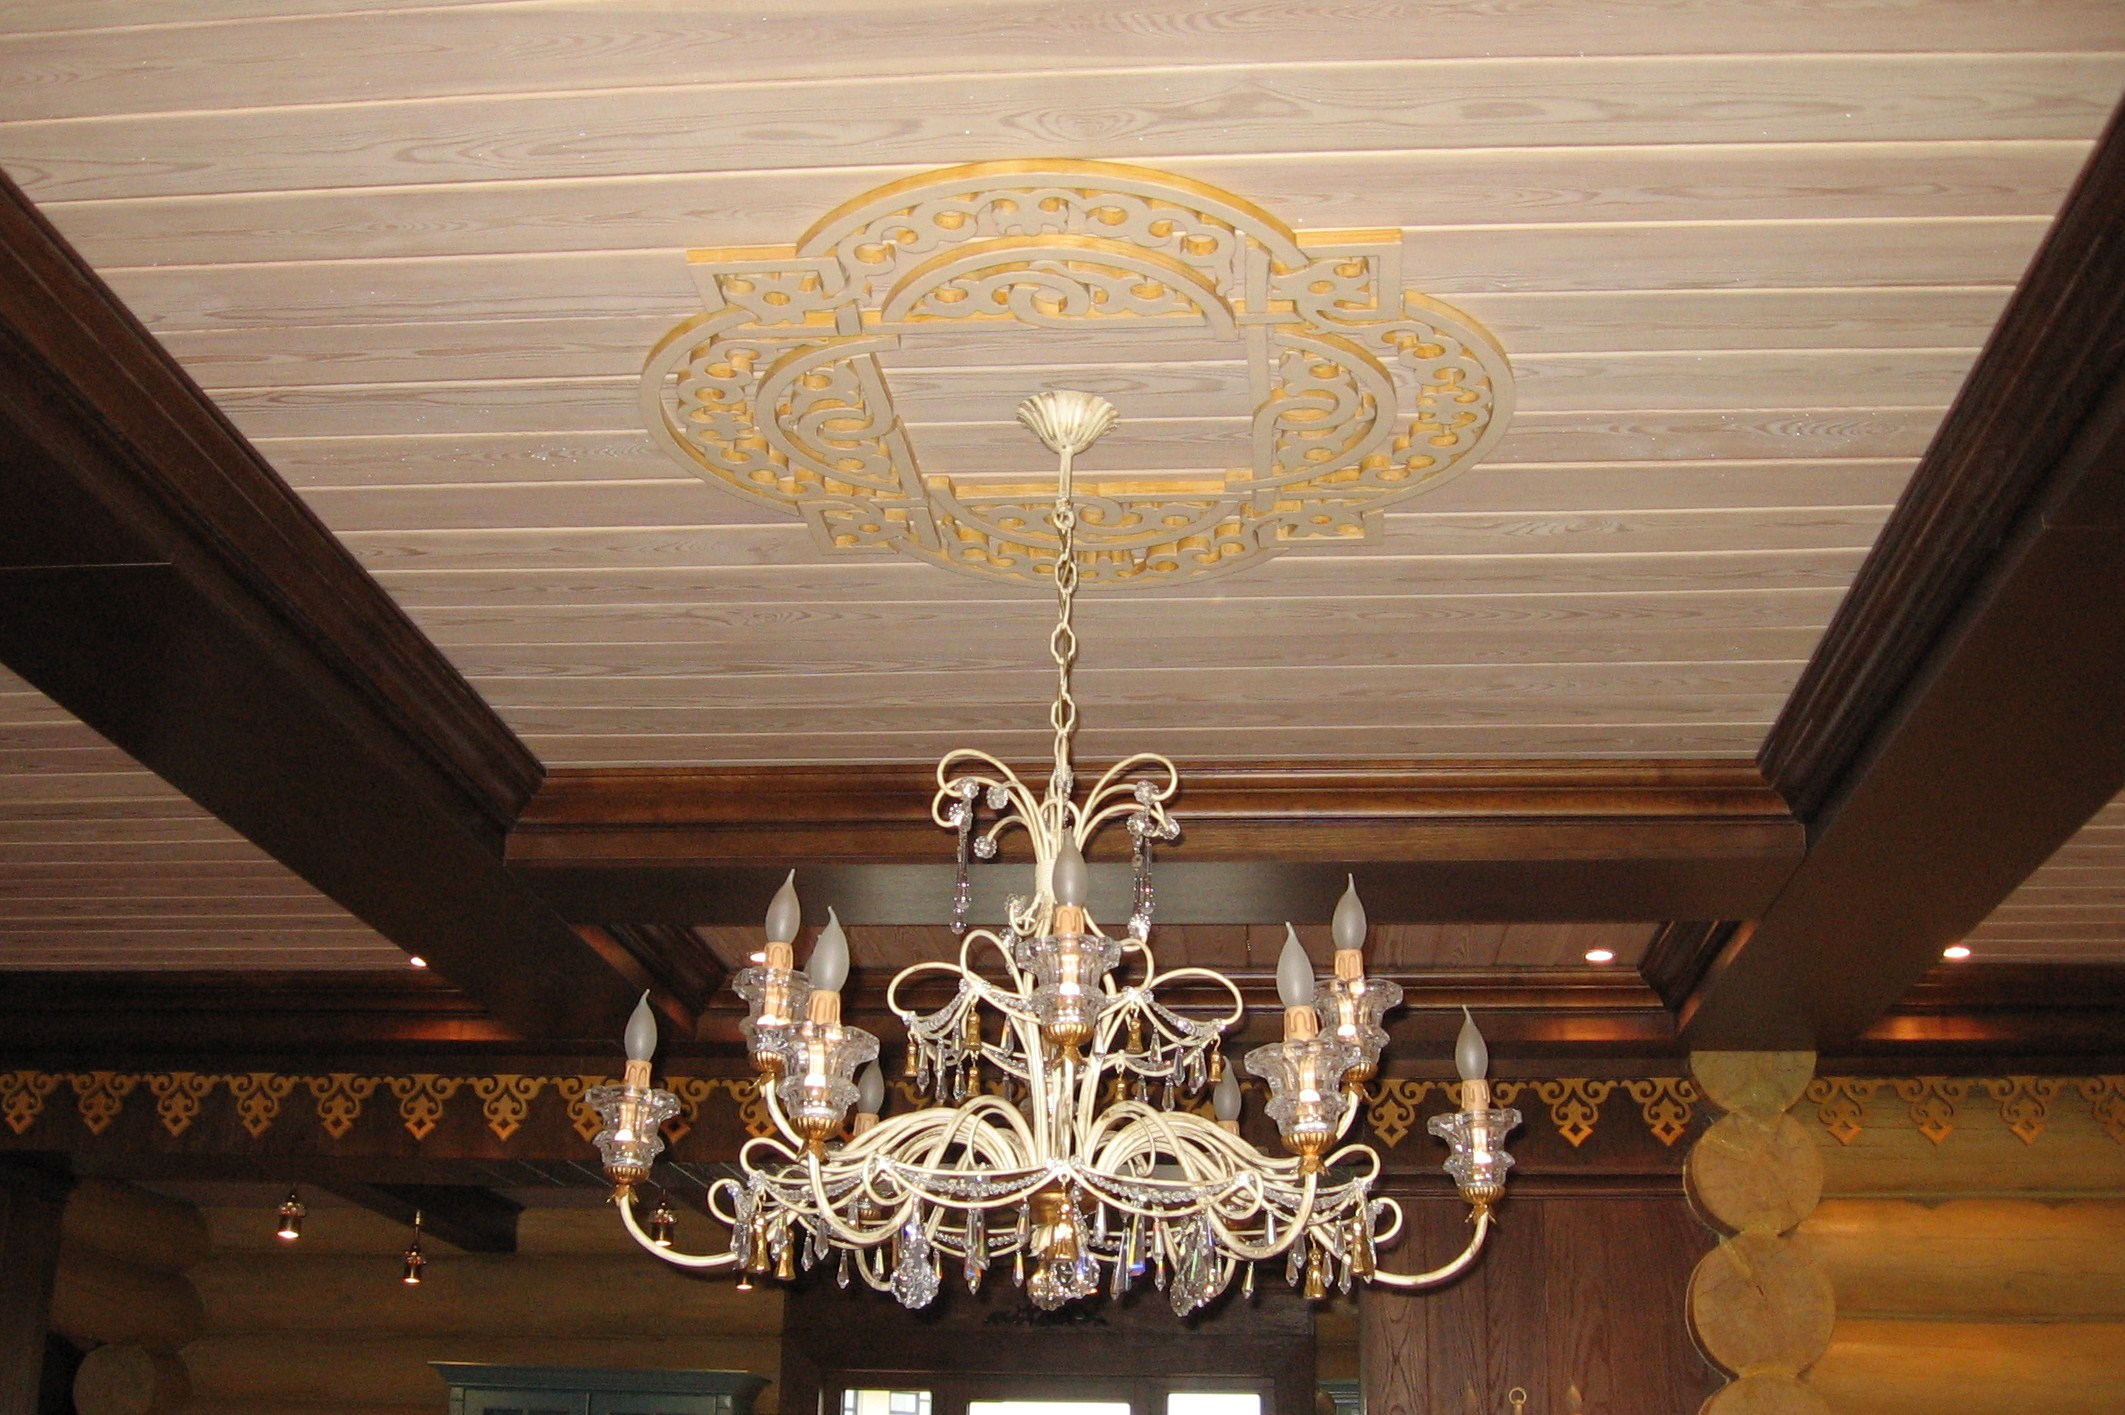 Внутренняя отделка деревянного дома, фрагмент потолка с резным орнаментом